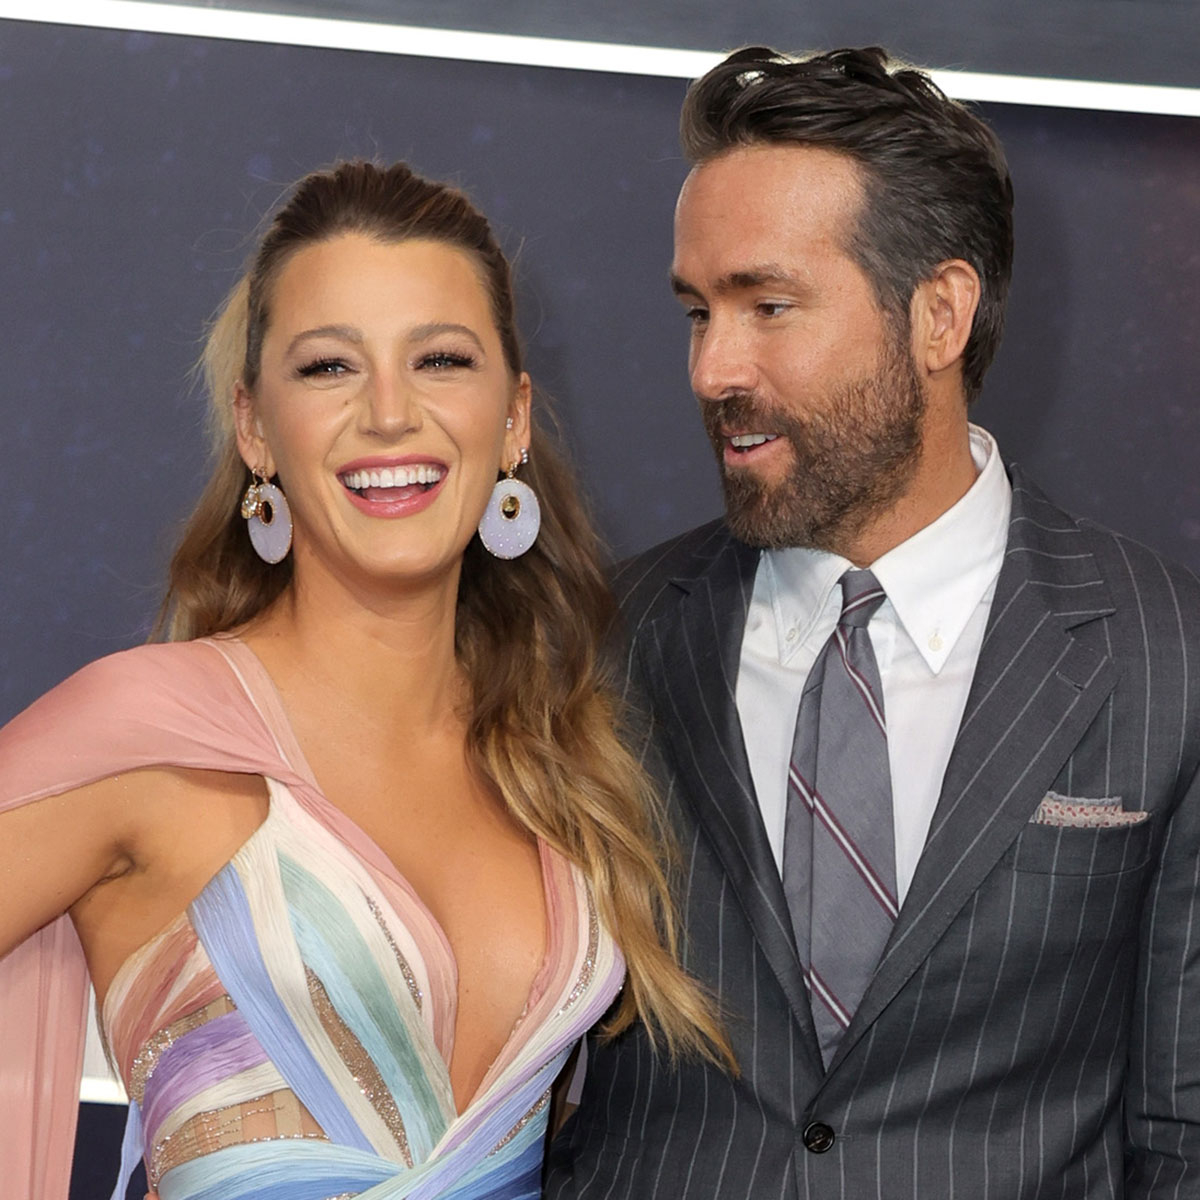 Blake Lively Jokes She Manifested "Dreamy" Ryan Reynolds